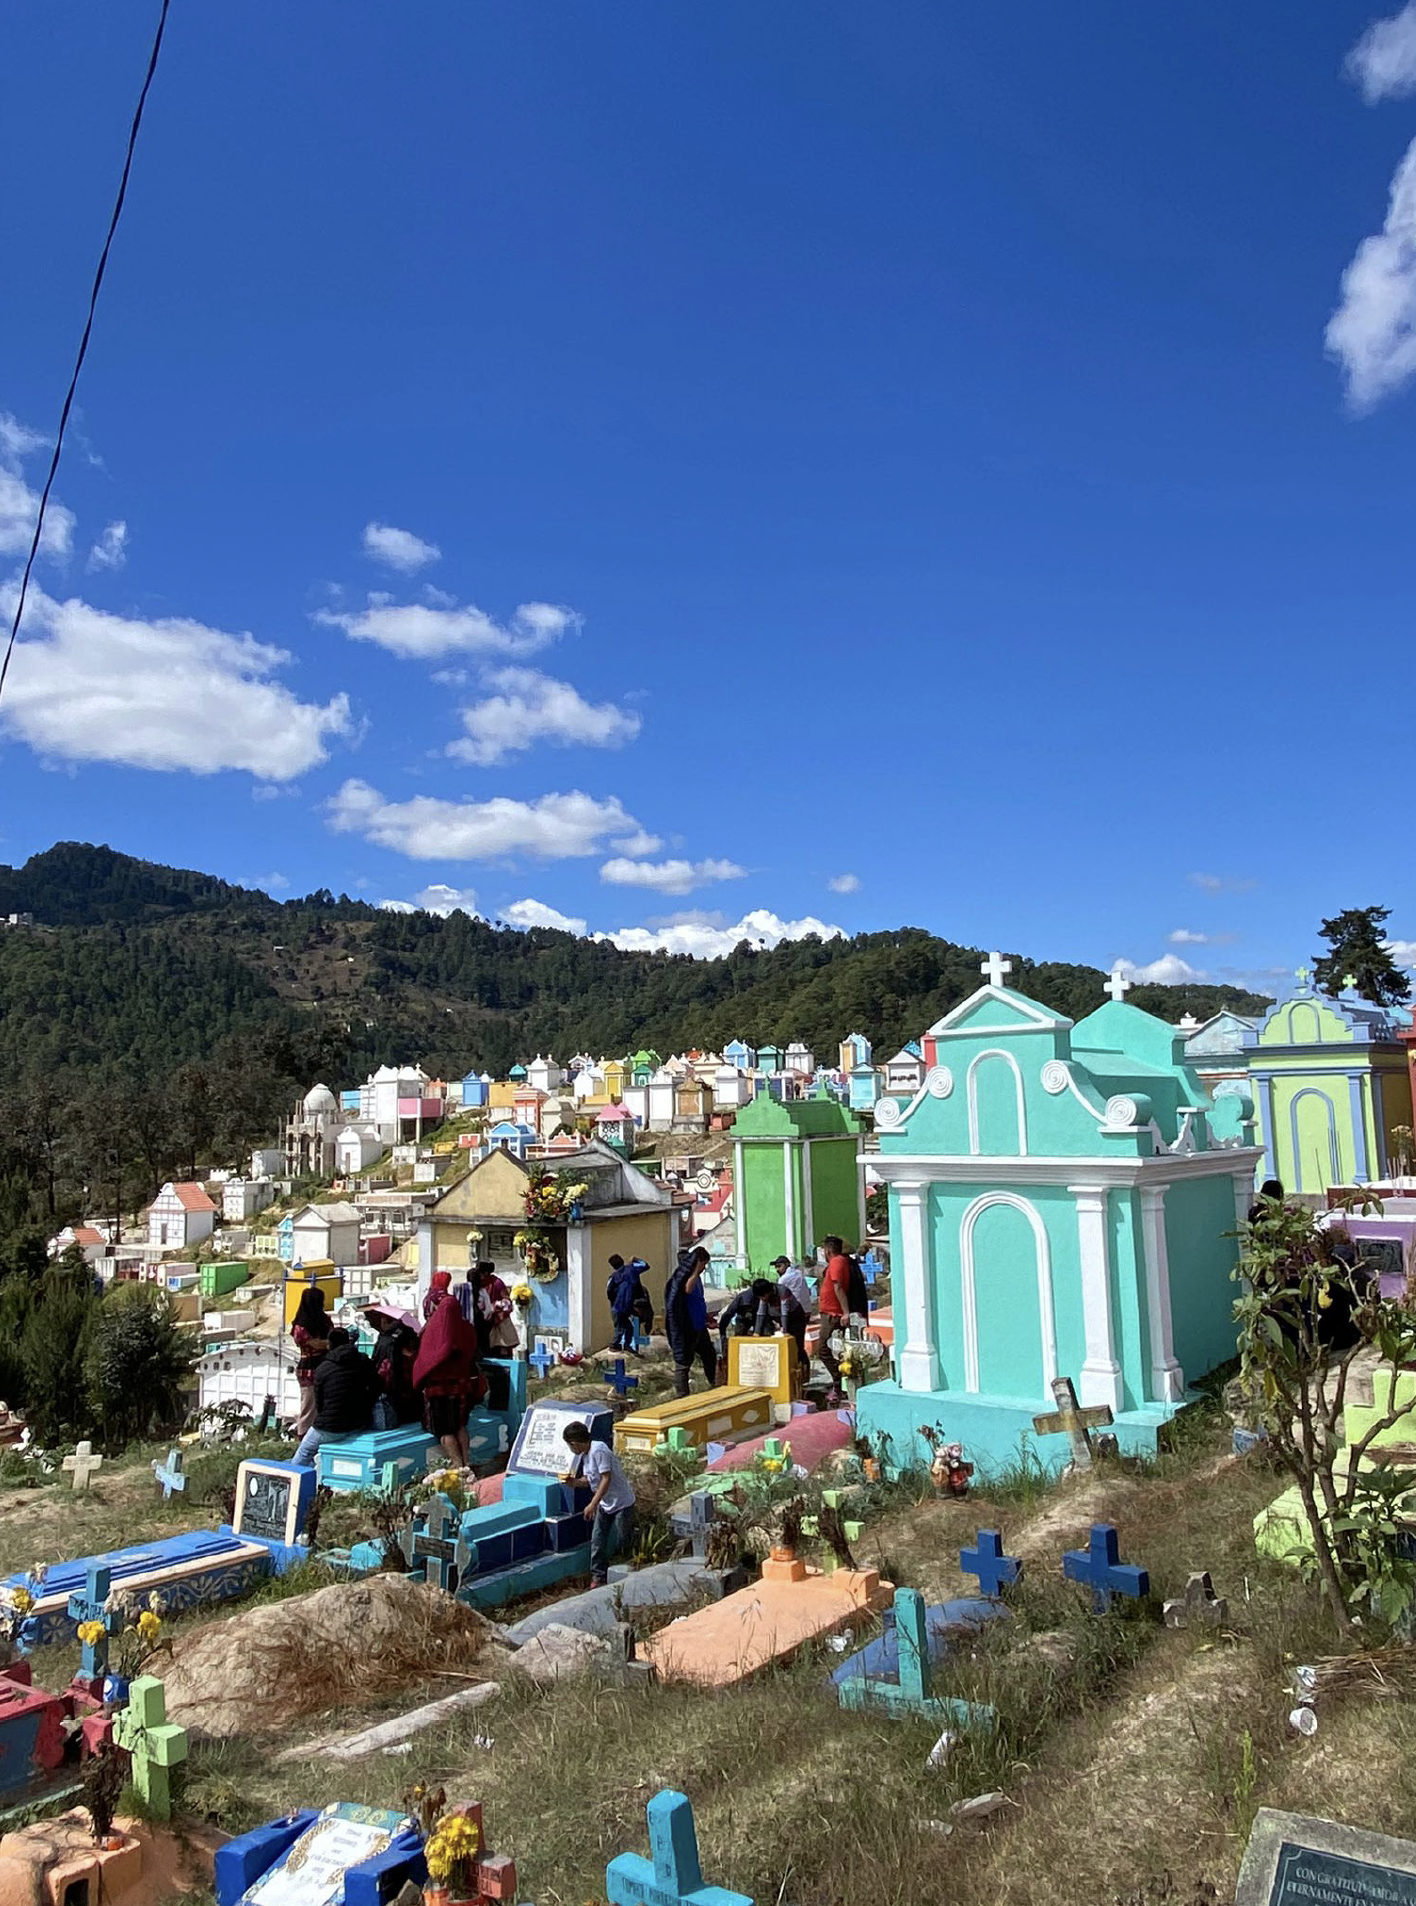 El cementerio de Chichicastenango (Quiché) es muy colorido y está lleno de vida. En él se puede ver a familias que pasan el día
sobre las tumbas, carritos de helados, rituales de origen maya en los que se queman ofrendas…